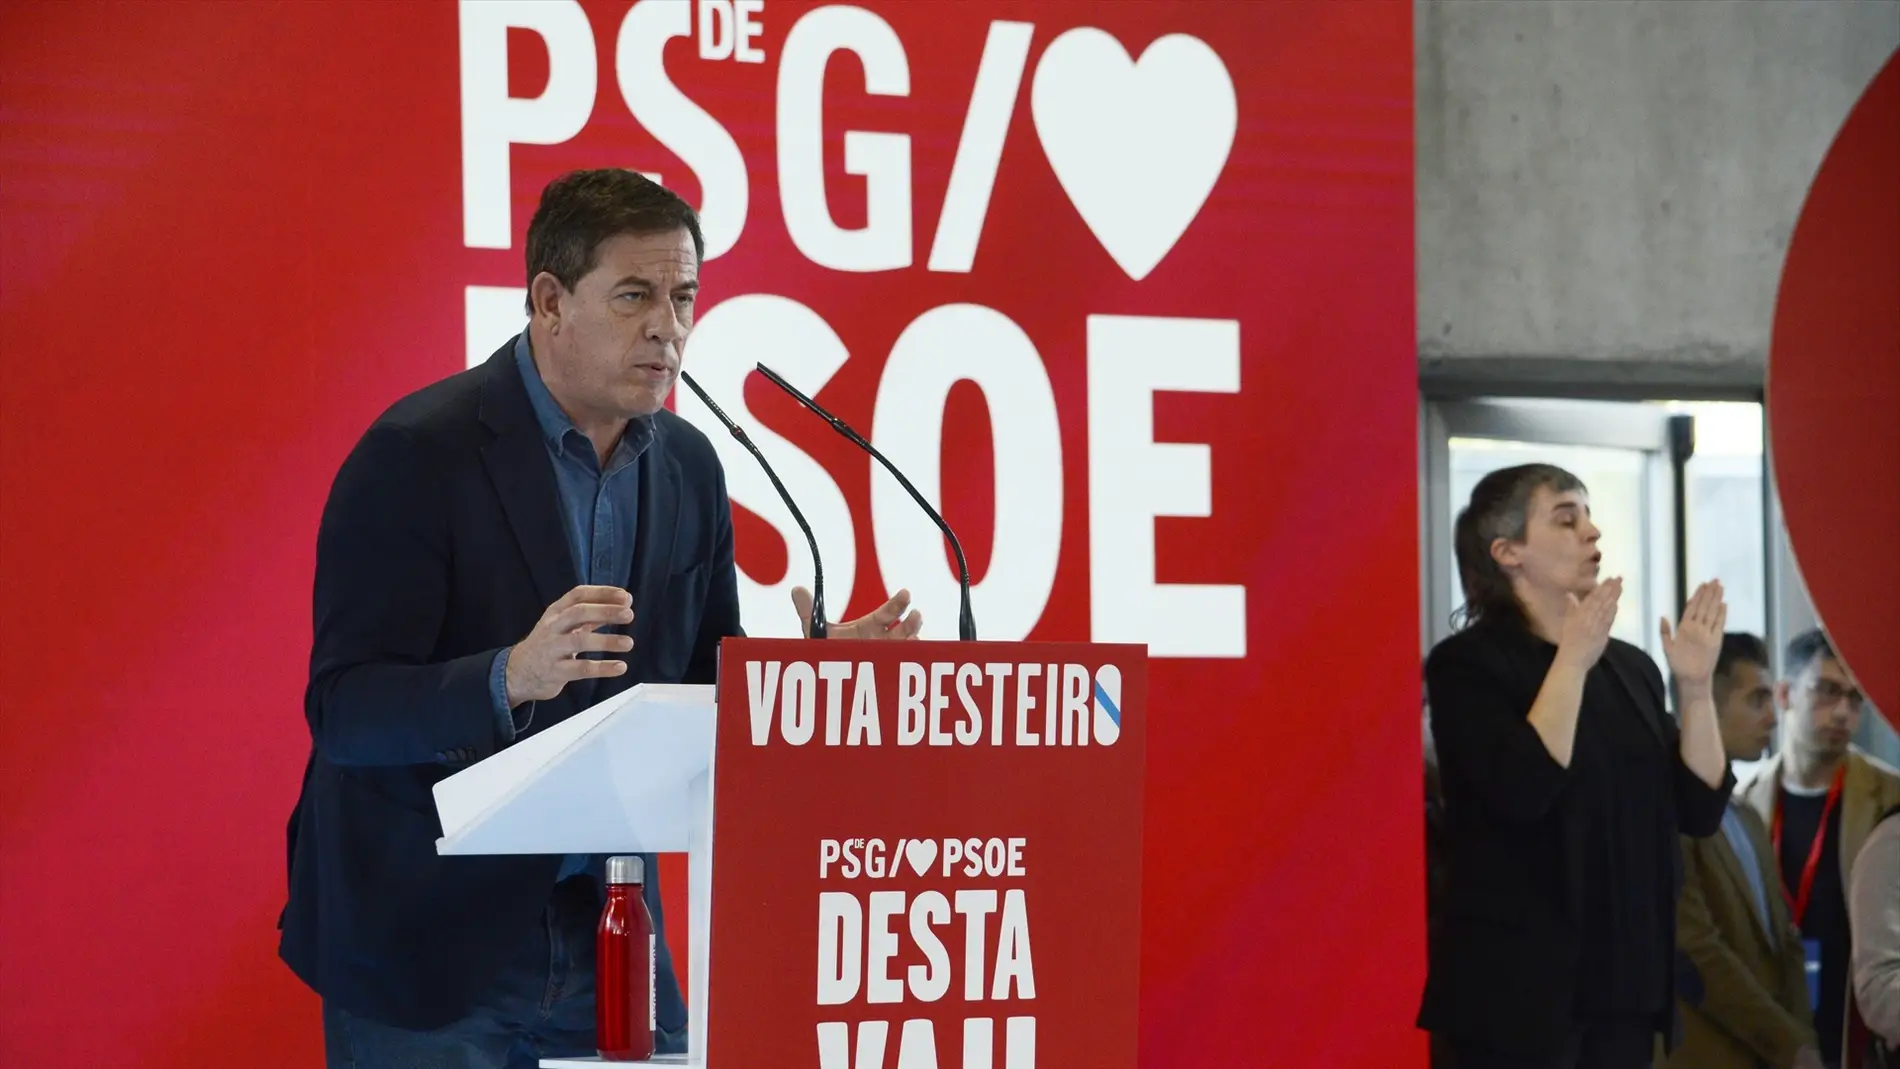 El programa electoral del PSOE para las elecciones en Galicia: los puntos clave del proyecto de Besteiro